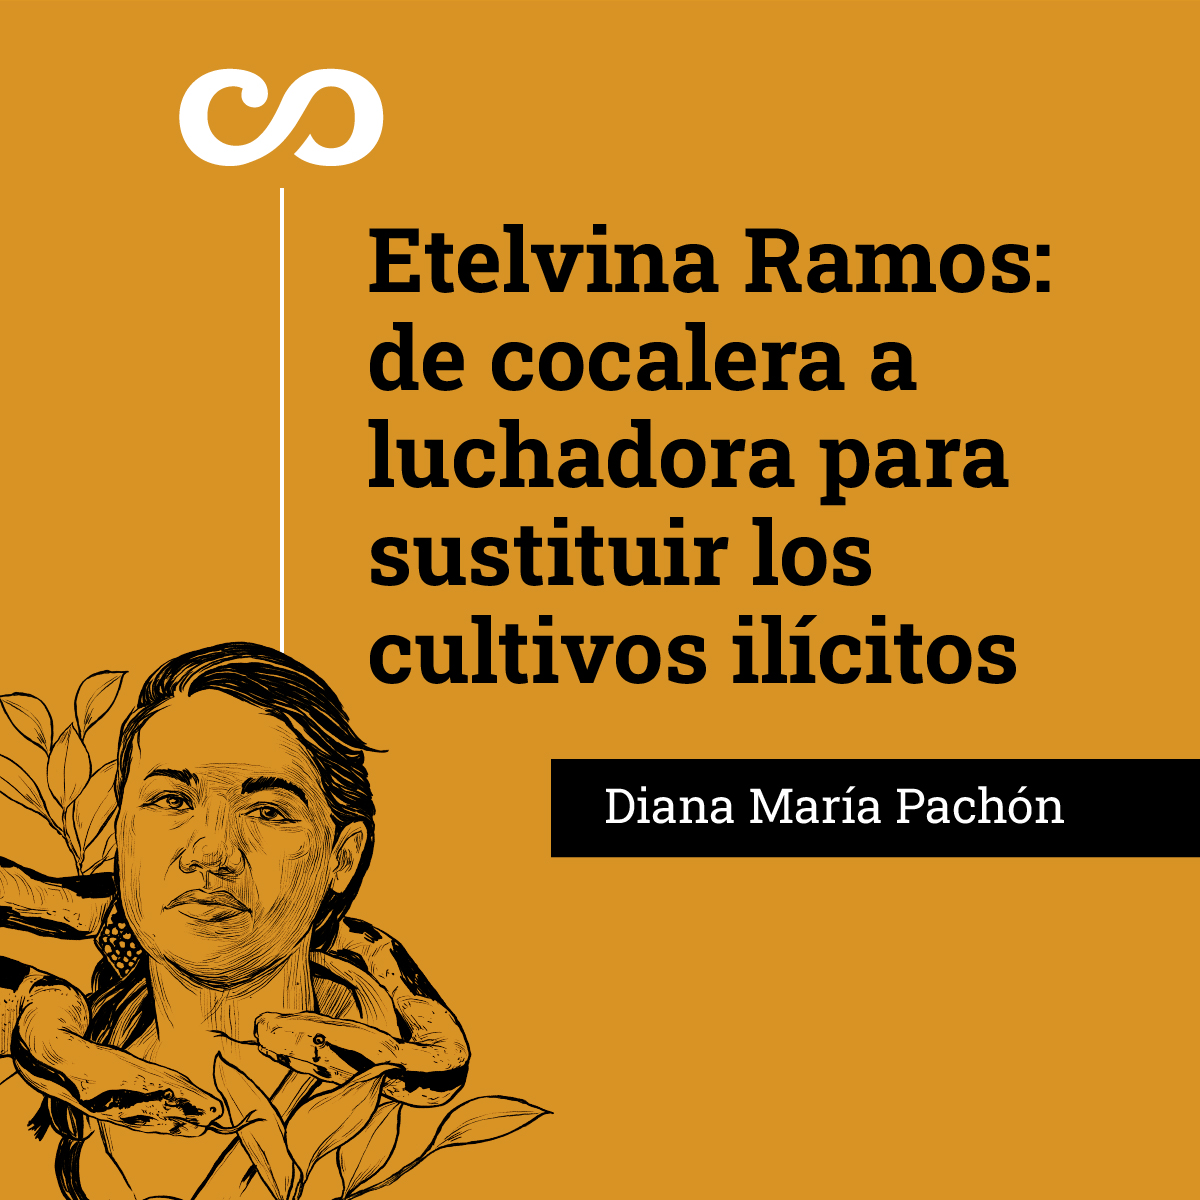 Etelvina Ramos: de cocalera a luchadora para sustituir los cultivos ilícitos